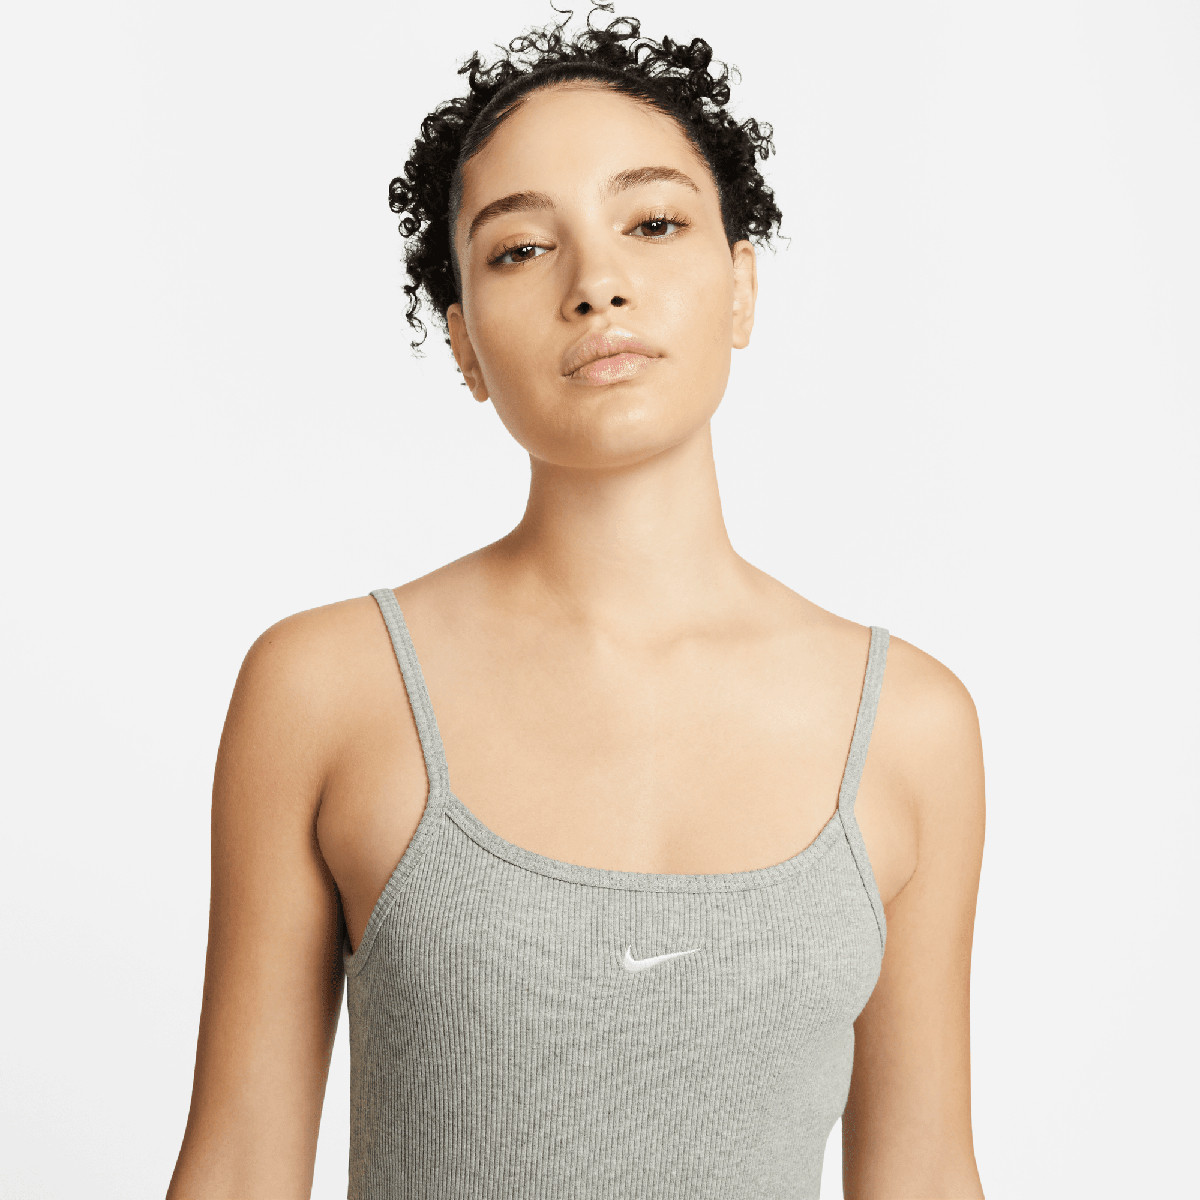 Robe Nike Sportswear Corail pour Fille plus agée chez DM'Sports !